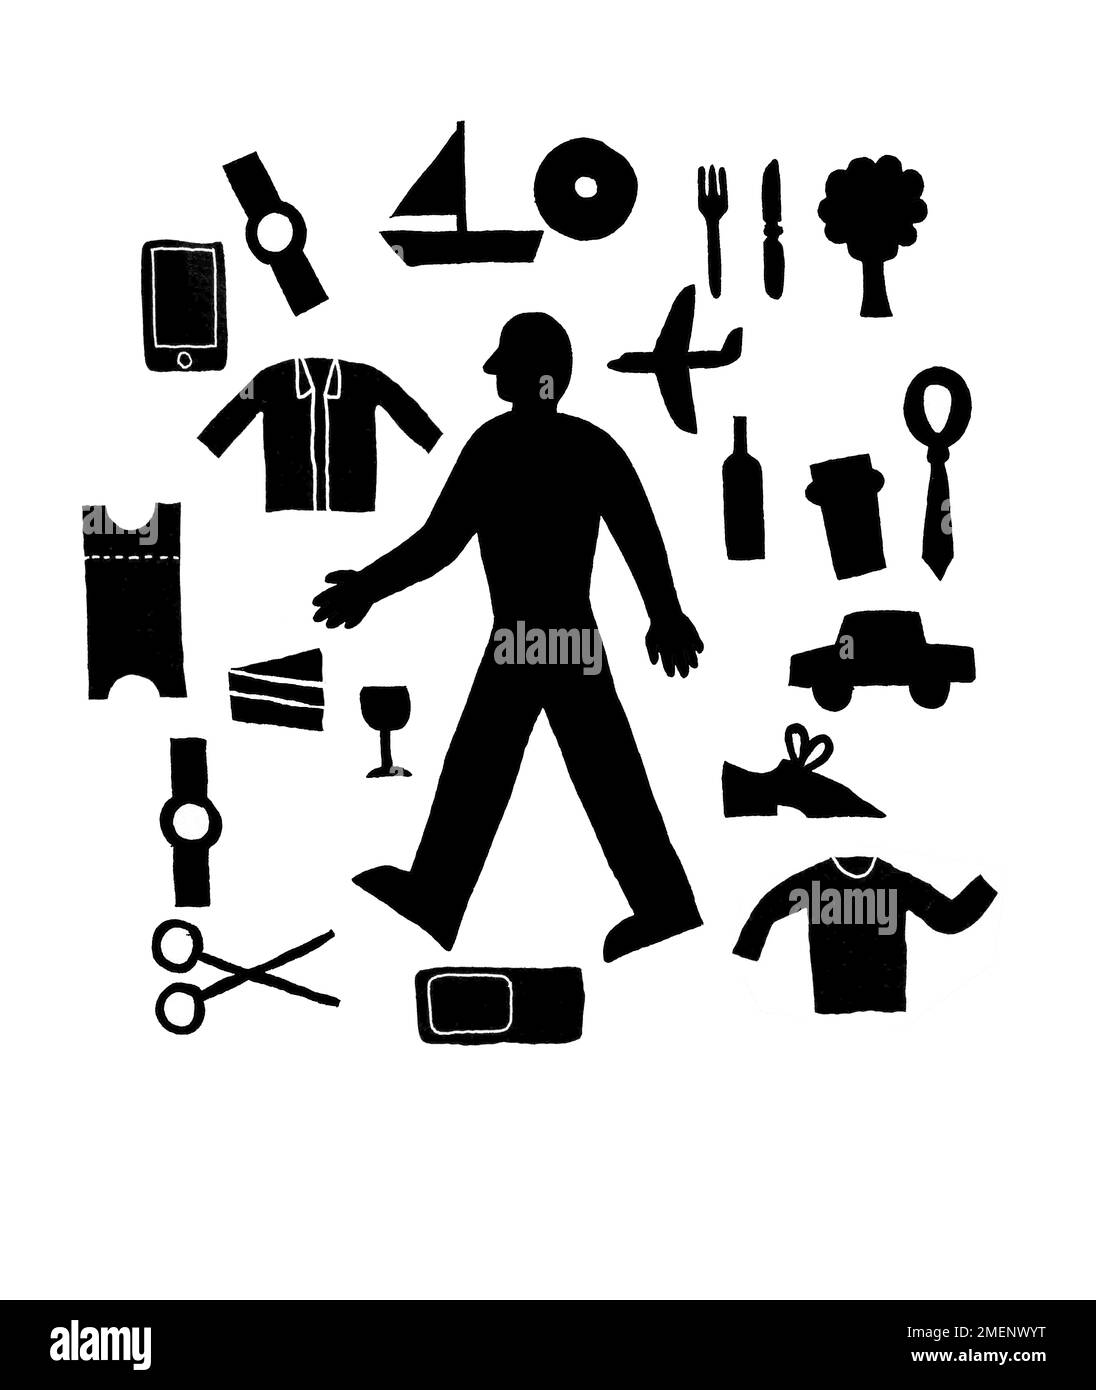 Illustration noire et blanche de l'homme entouré par une multitude d'objets et de préoccupations de tous les jours Banque D'Images